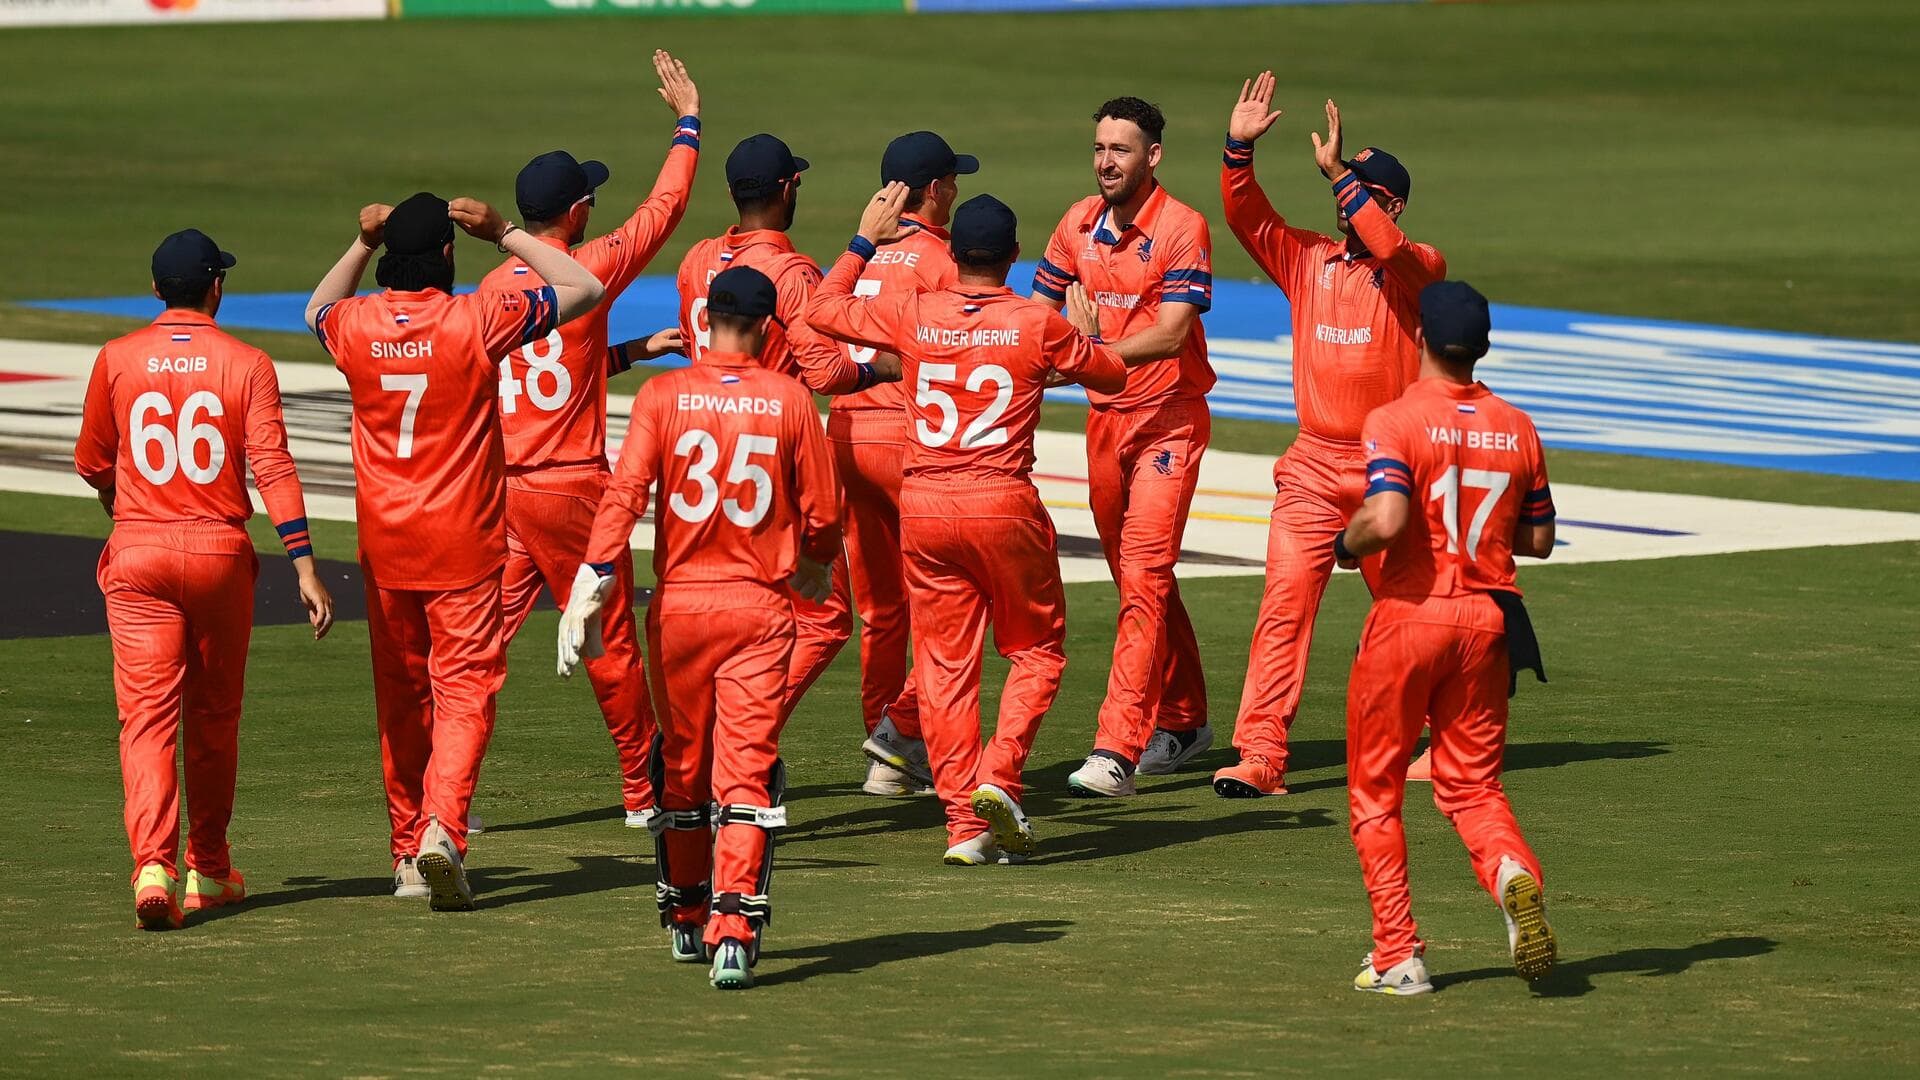 वनडे विश्व कप, नीदरलैंड बनाम दक्षिण अफ्रीका: धर्मशाला क्रिकेट स्टेडियम की पिच रिपोर्ट और रोचक आंकड़े 